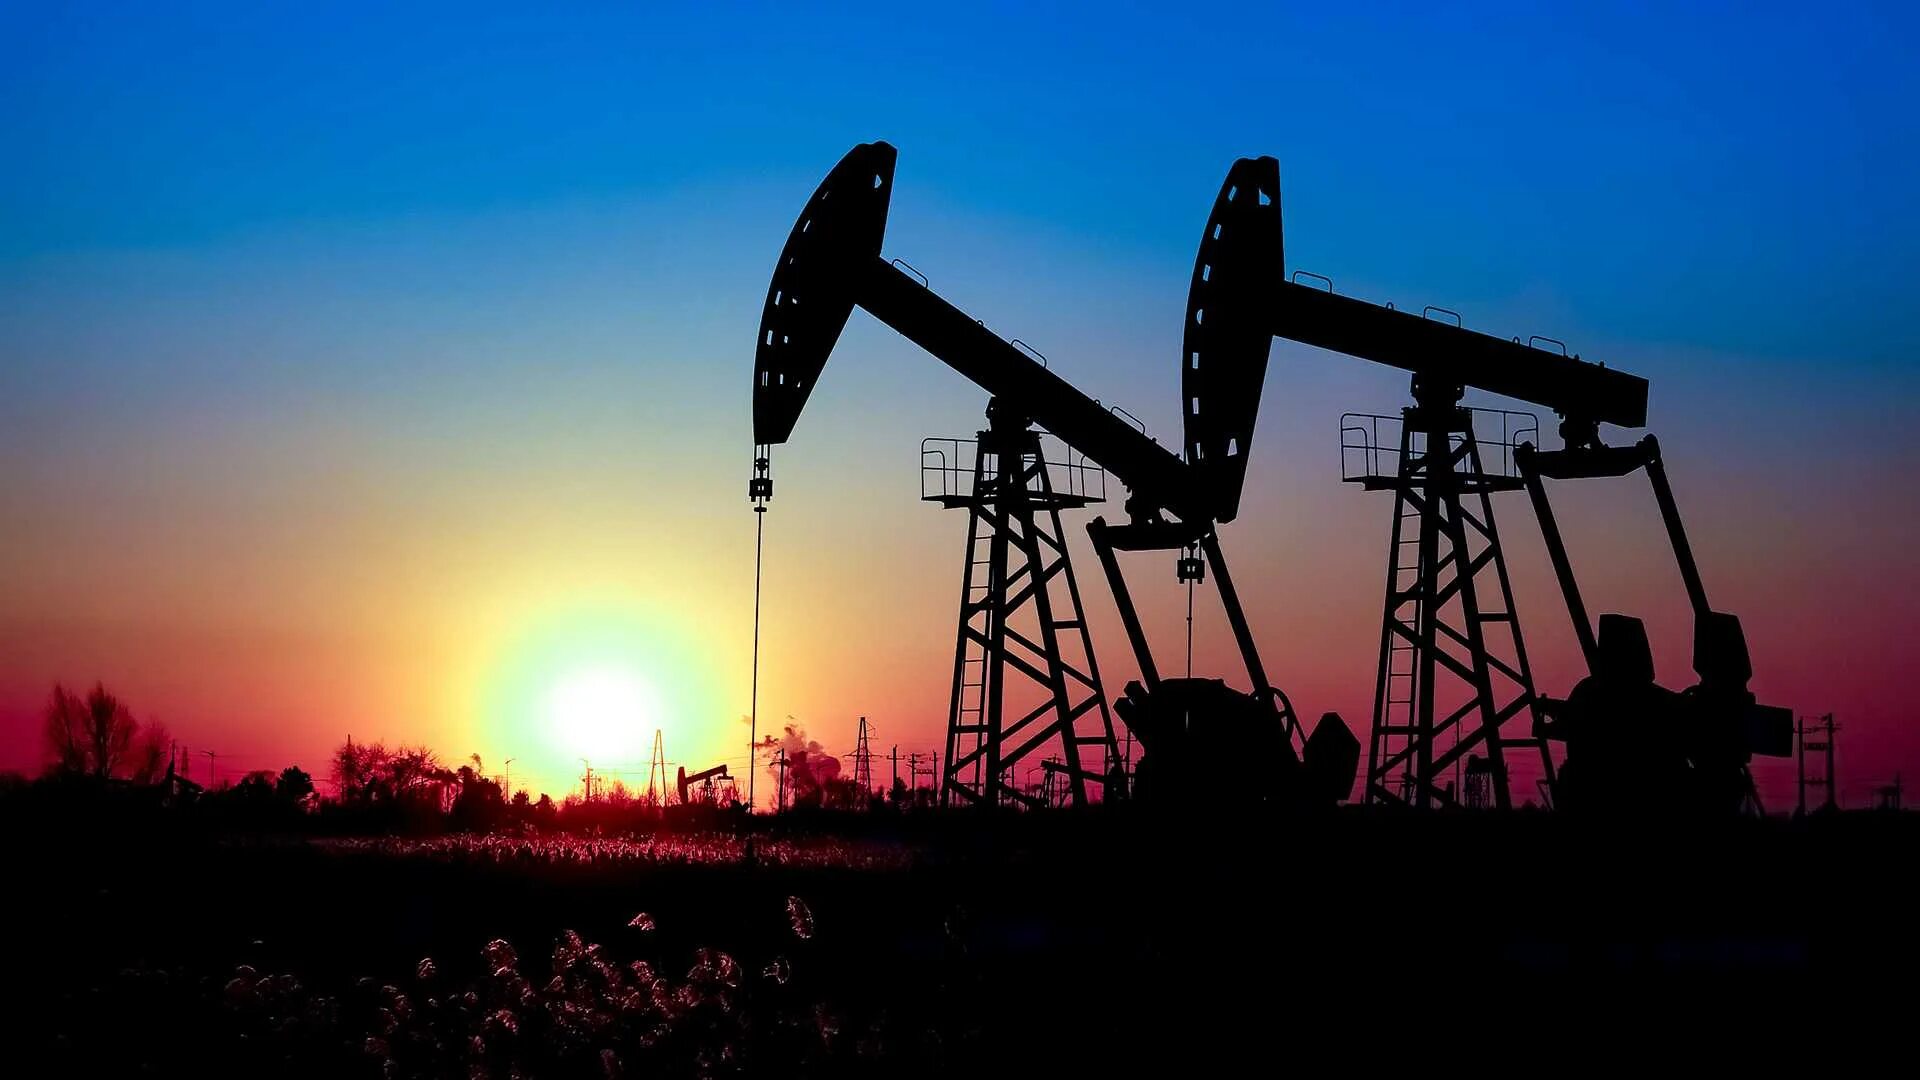 Тюменский нефти и газа. Дацин месторождение нефти. Китай Дацин нефтяное месторождение. Добыча нефти и газа Тюмень. Нефтяная вышка.